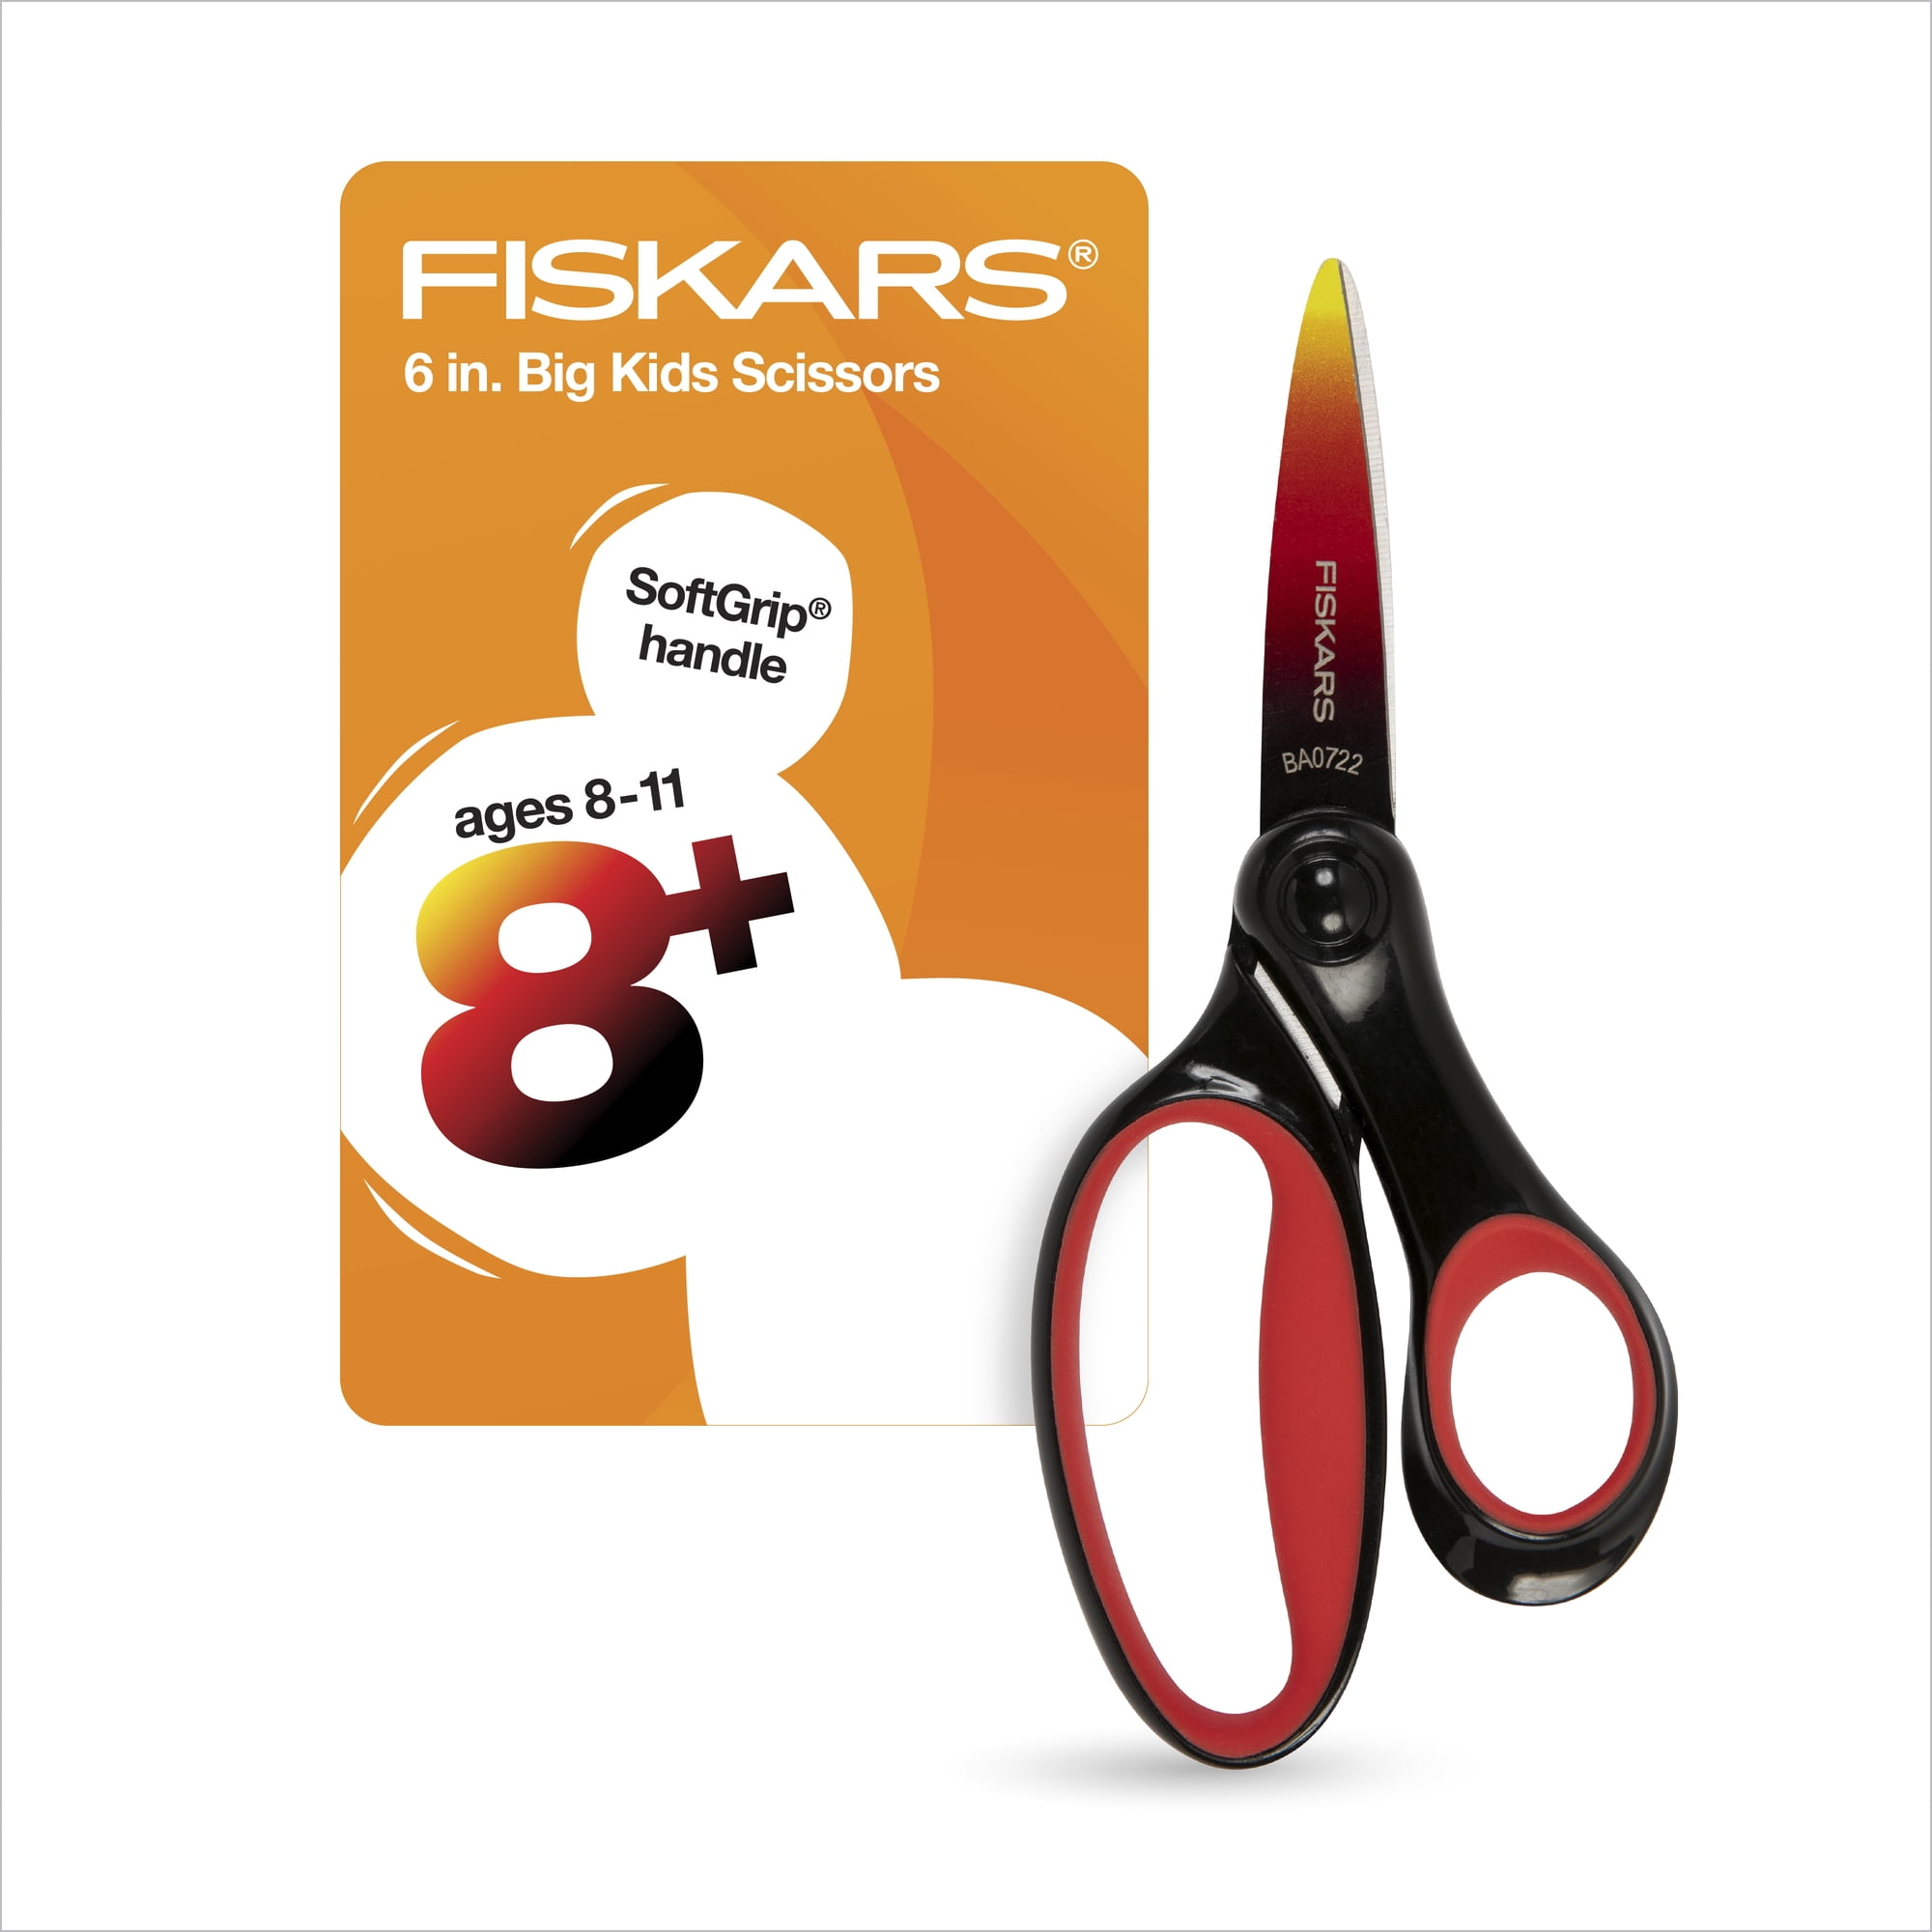 Fiskars PowerArc 8 In. Stainless Steel Scissors - Gillman Home Center